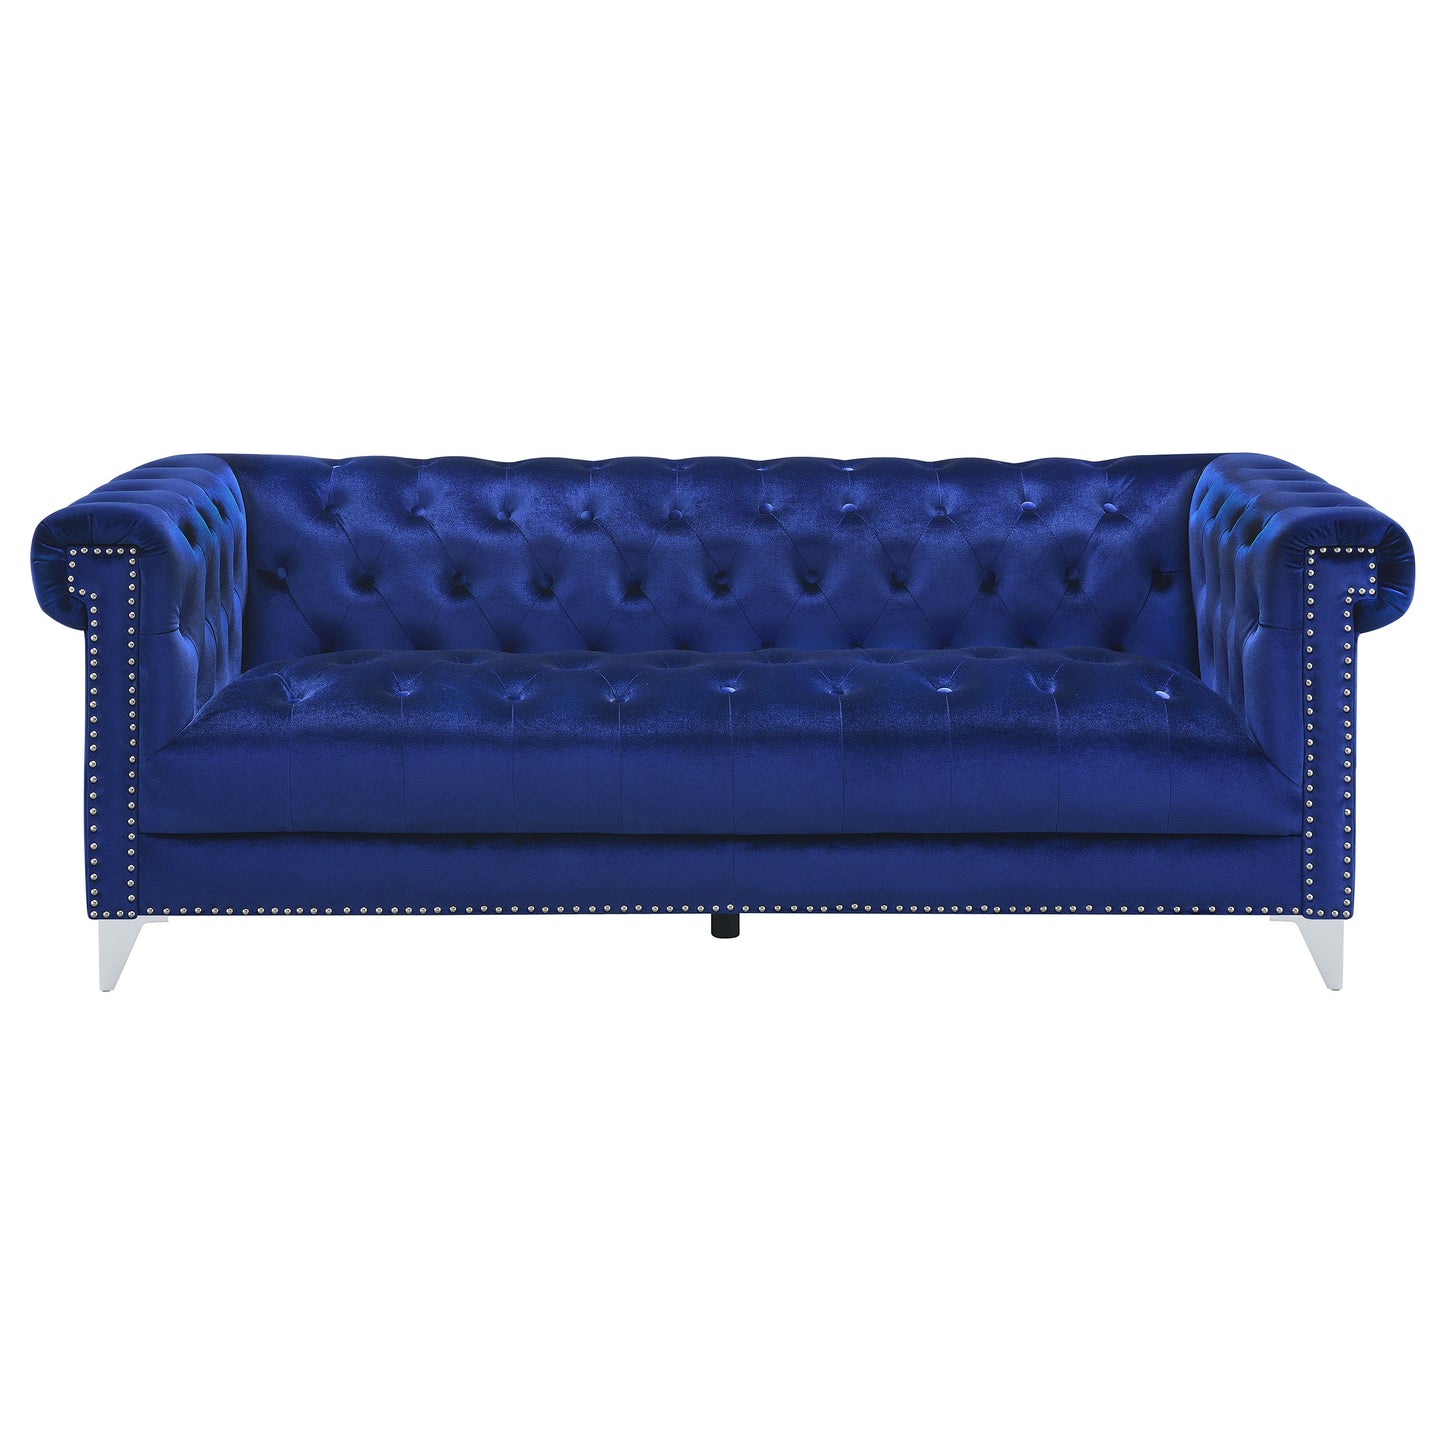 Bleker Upholstered Tuxedo Arm Tufted Sofa Blue